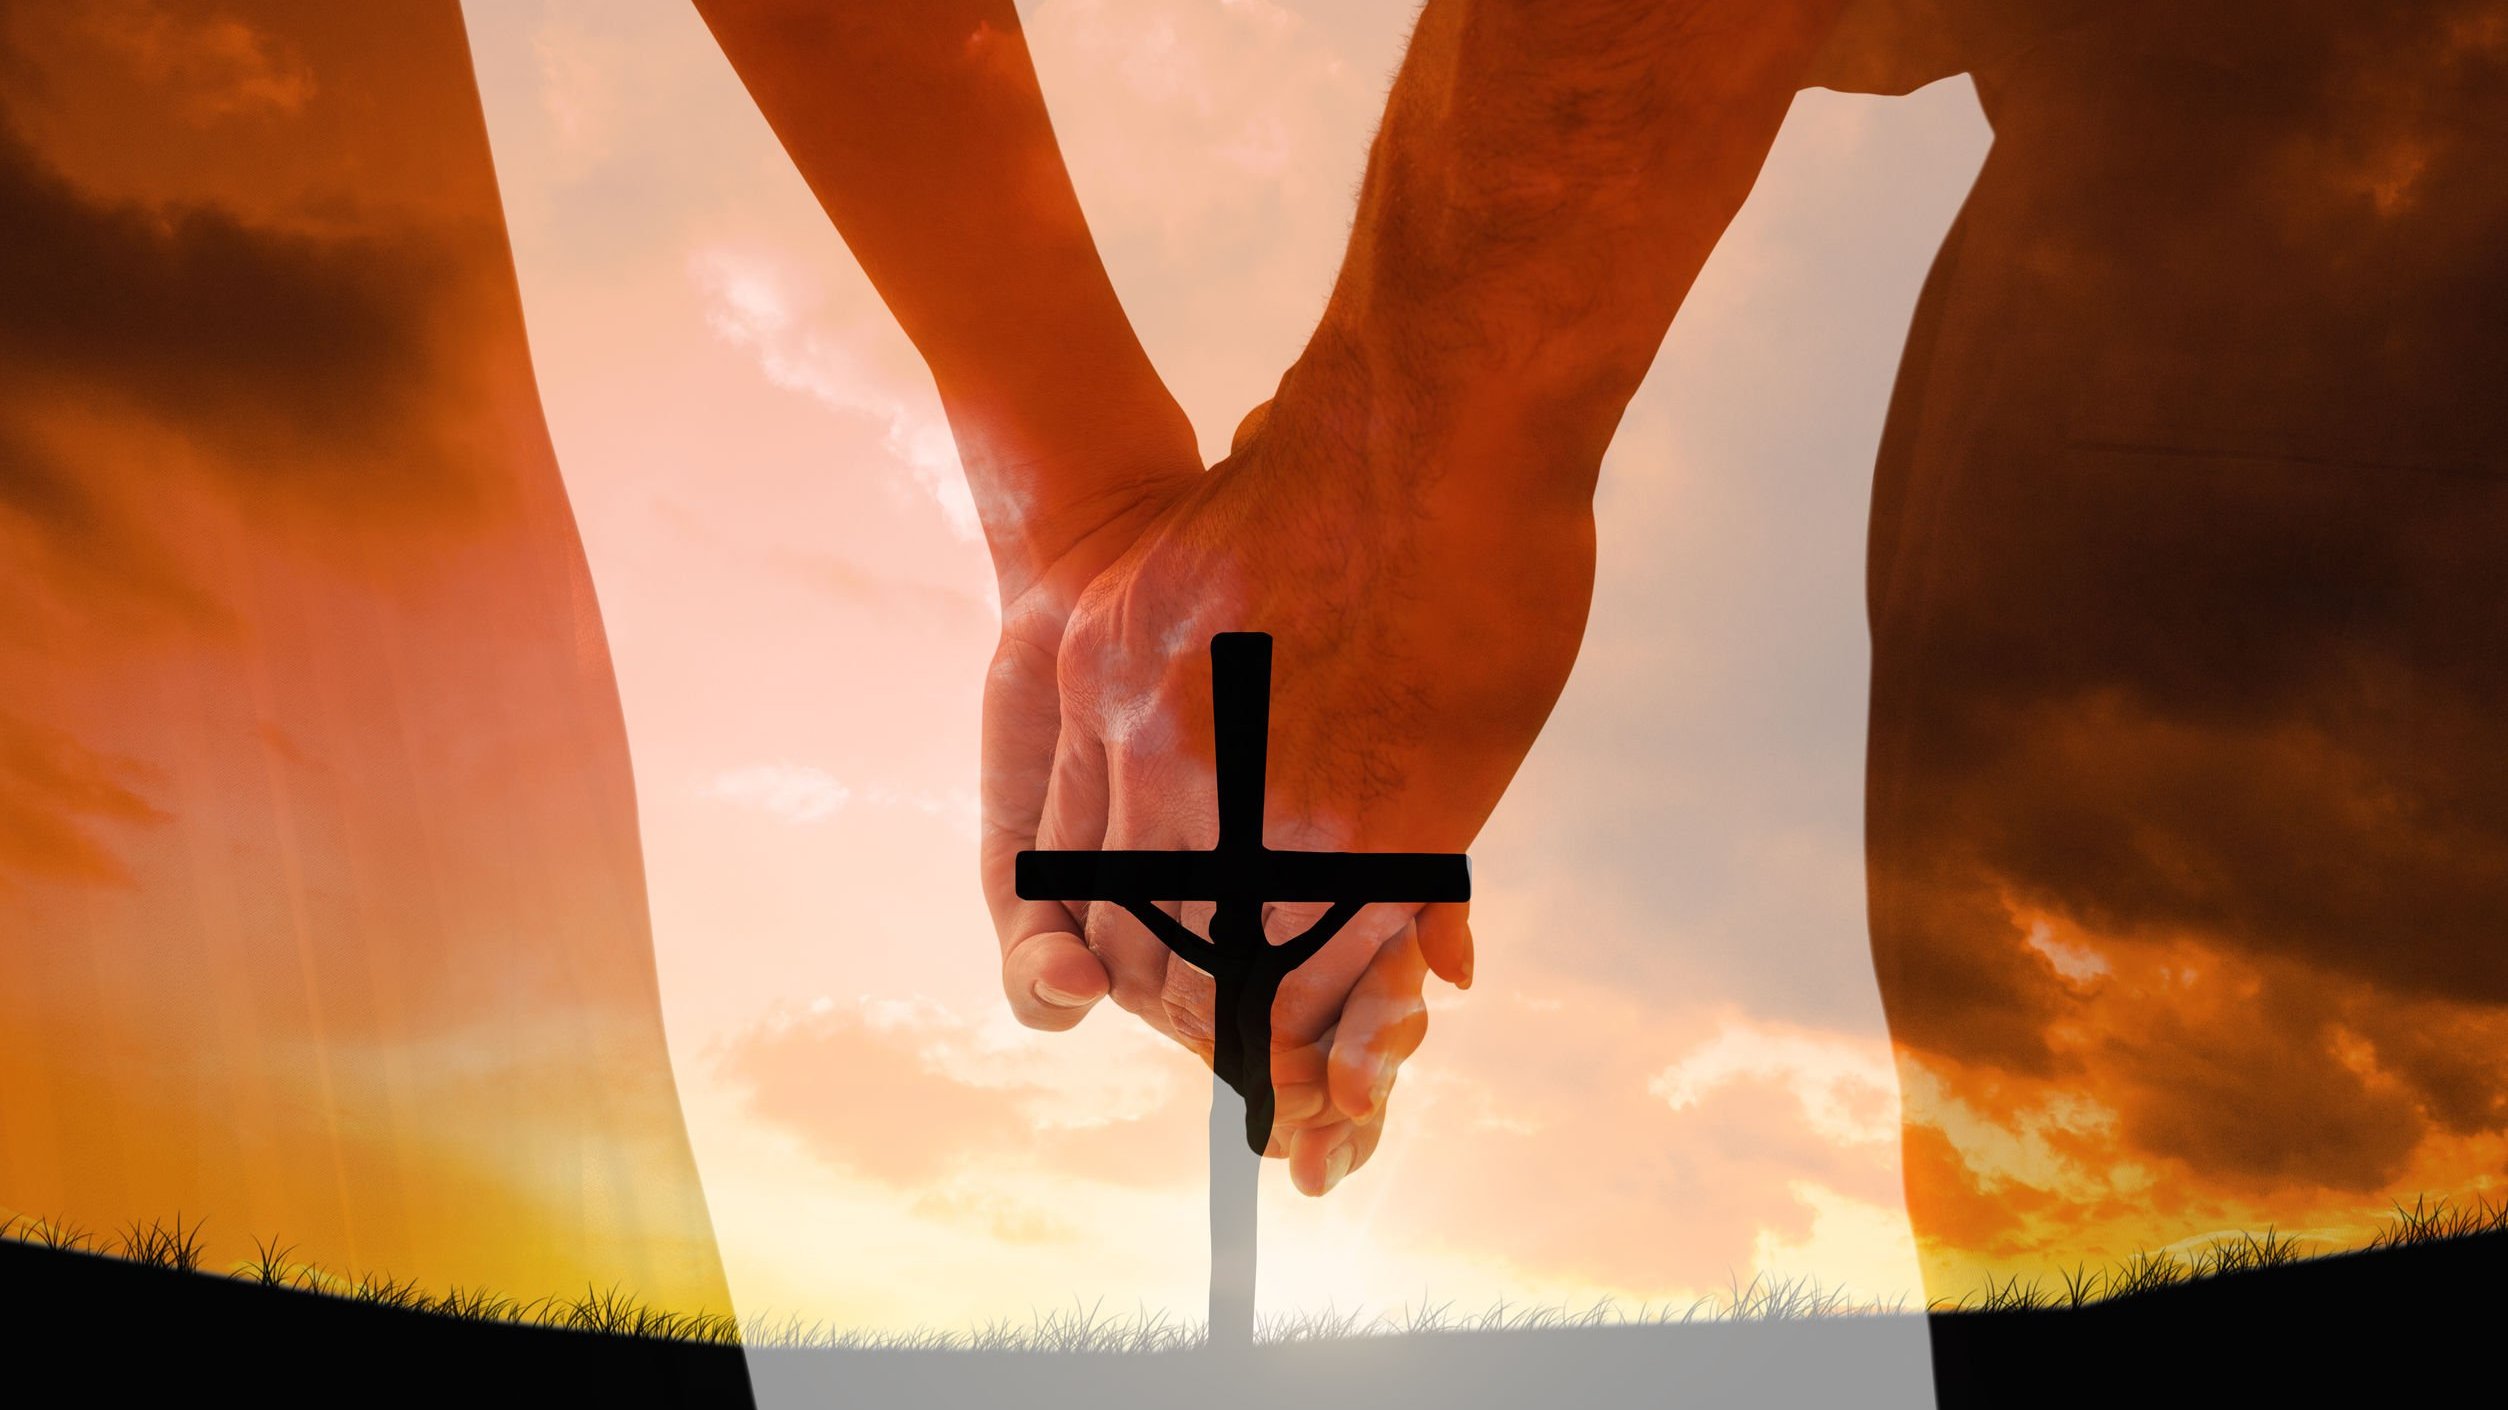 Mãos dadas sob a imagem da cruz.